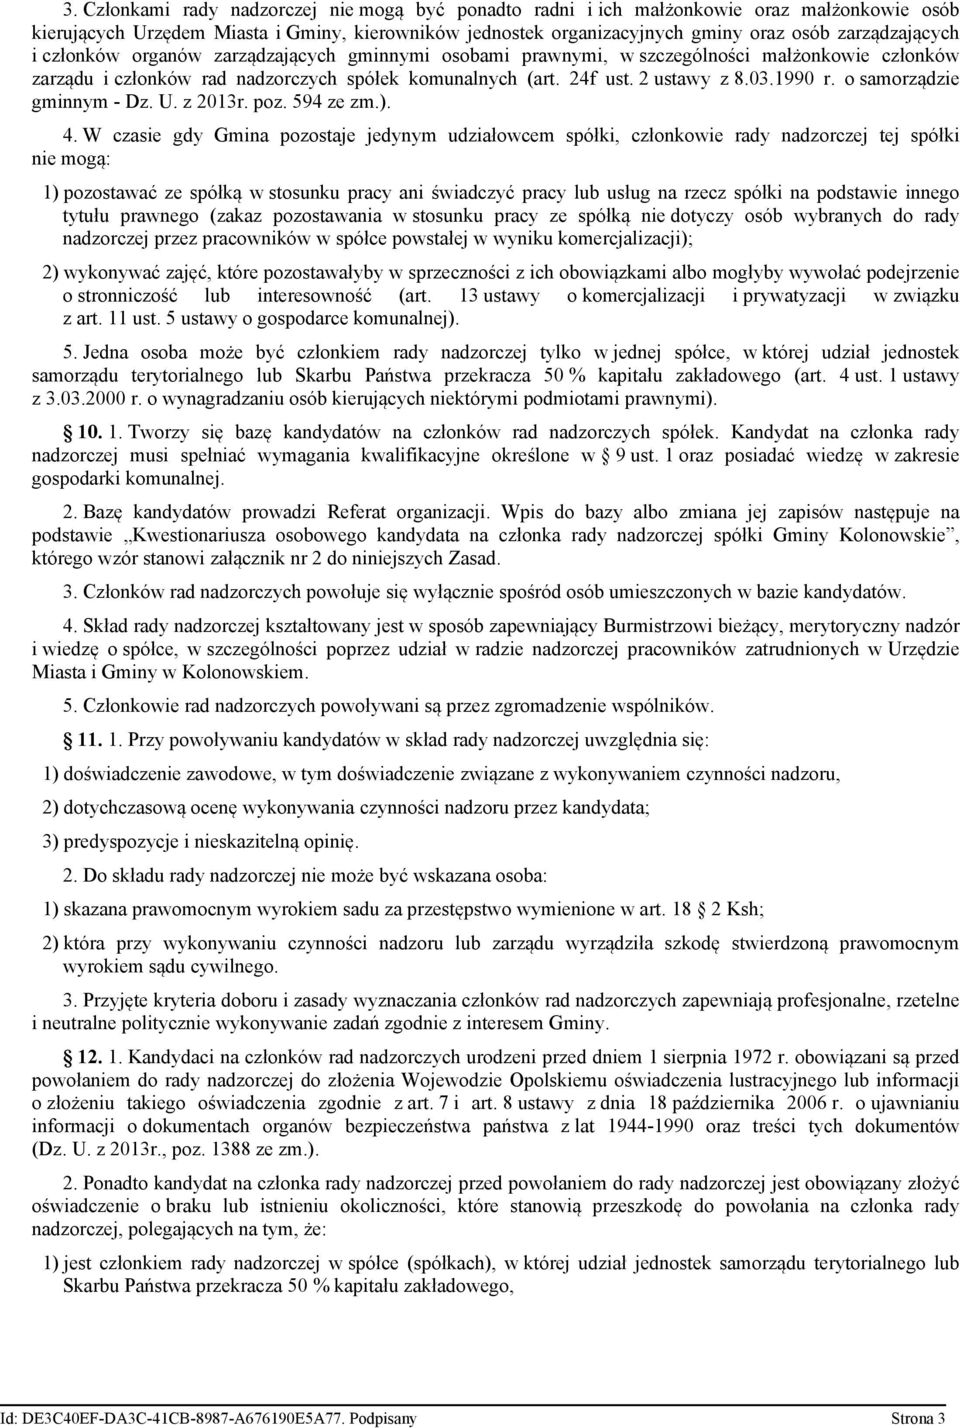 1990 r. o samorządzie gminnym - Dz. U. z 2013r. poz. 594 ze zm.). 4.